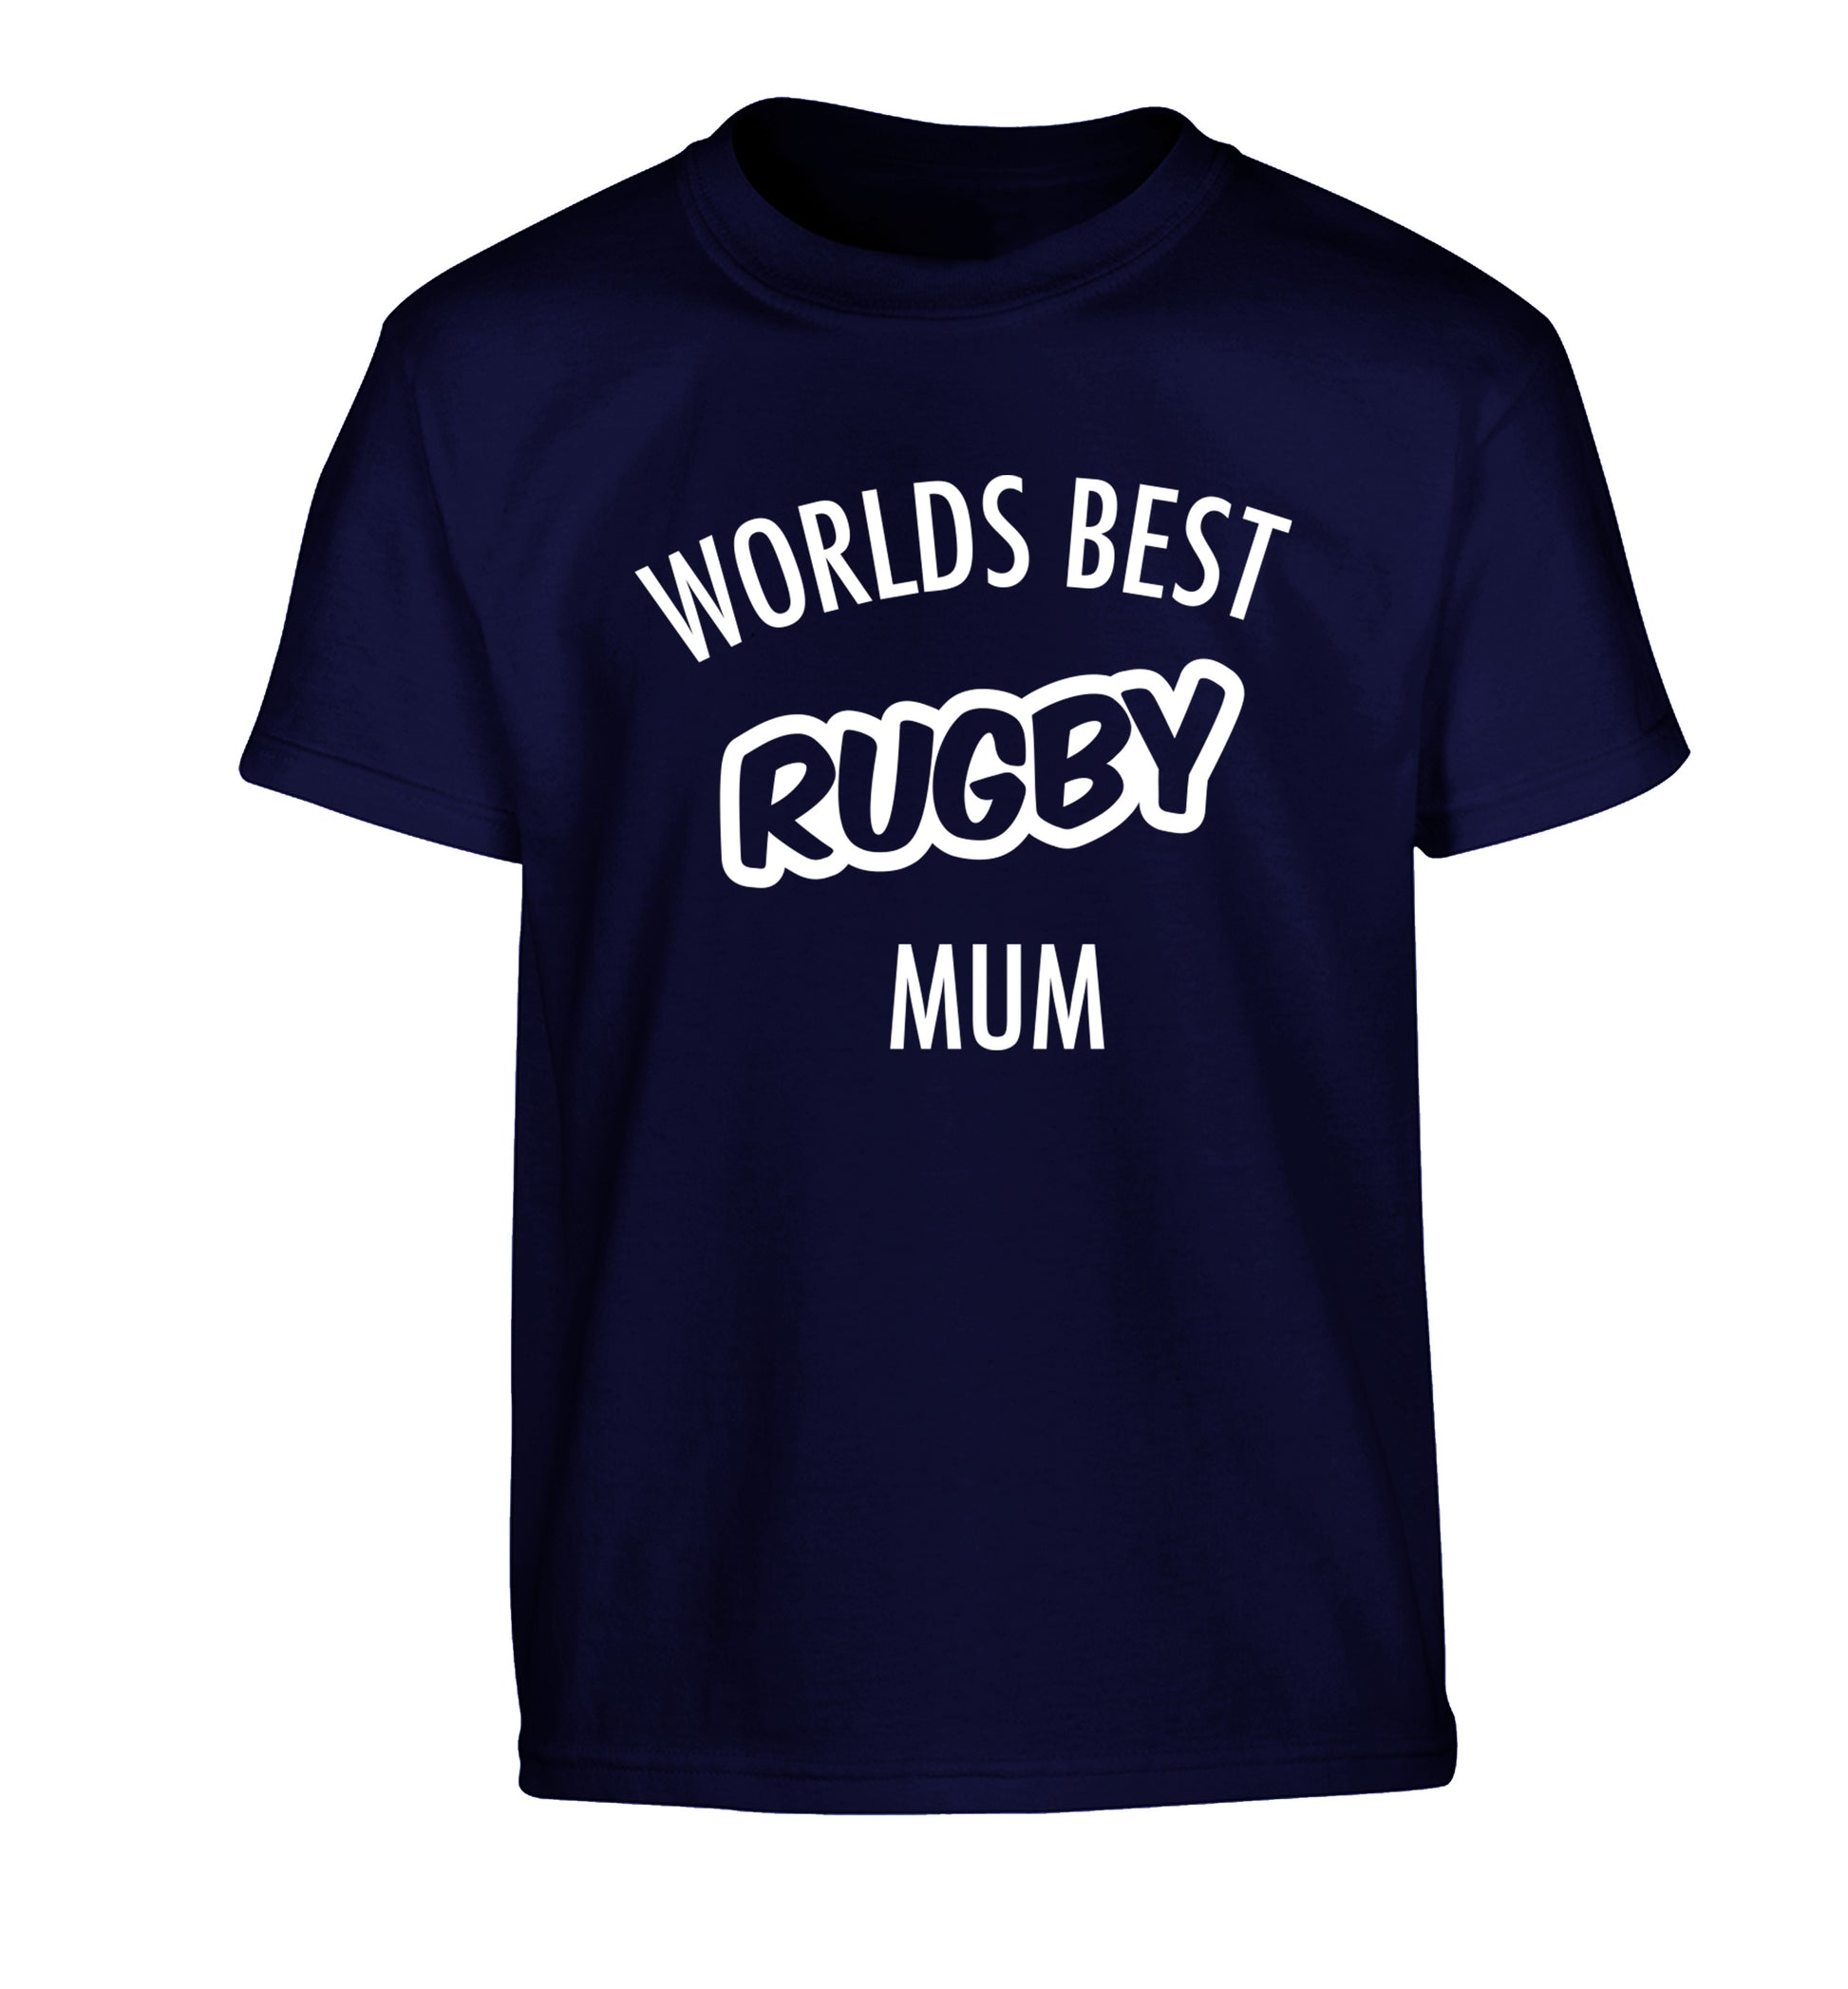 Worlds best rugby mum Children's navy Tshirt 12-13 Years